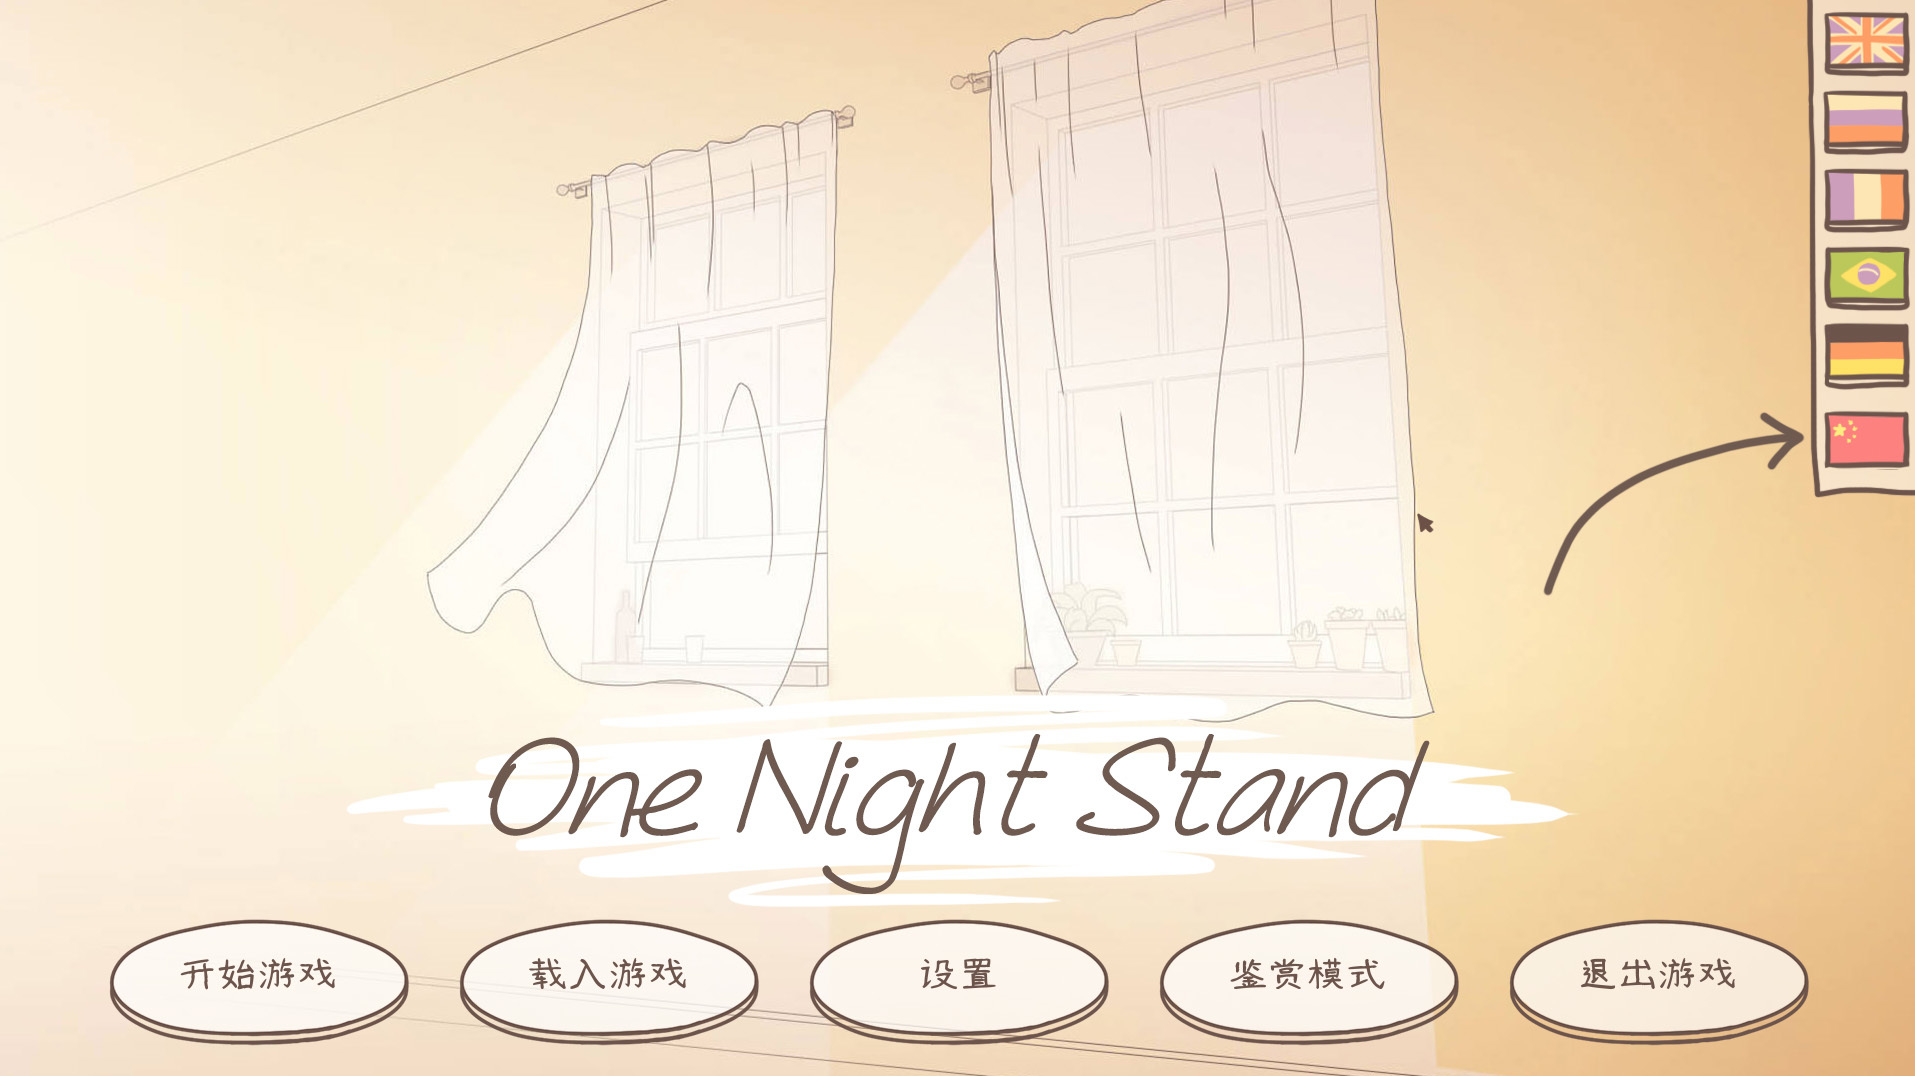 《1夜情》减进简体中文 Steam上取得“出格好评”